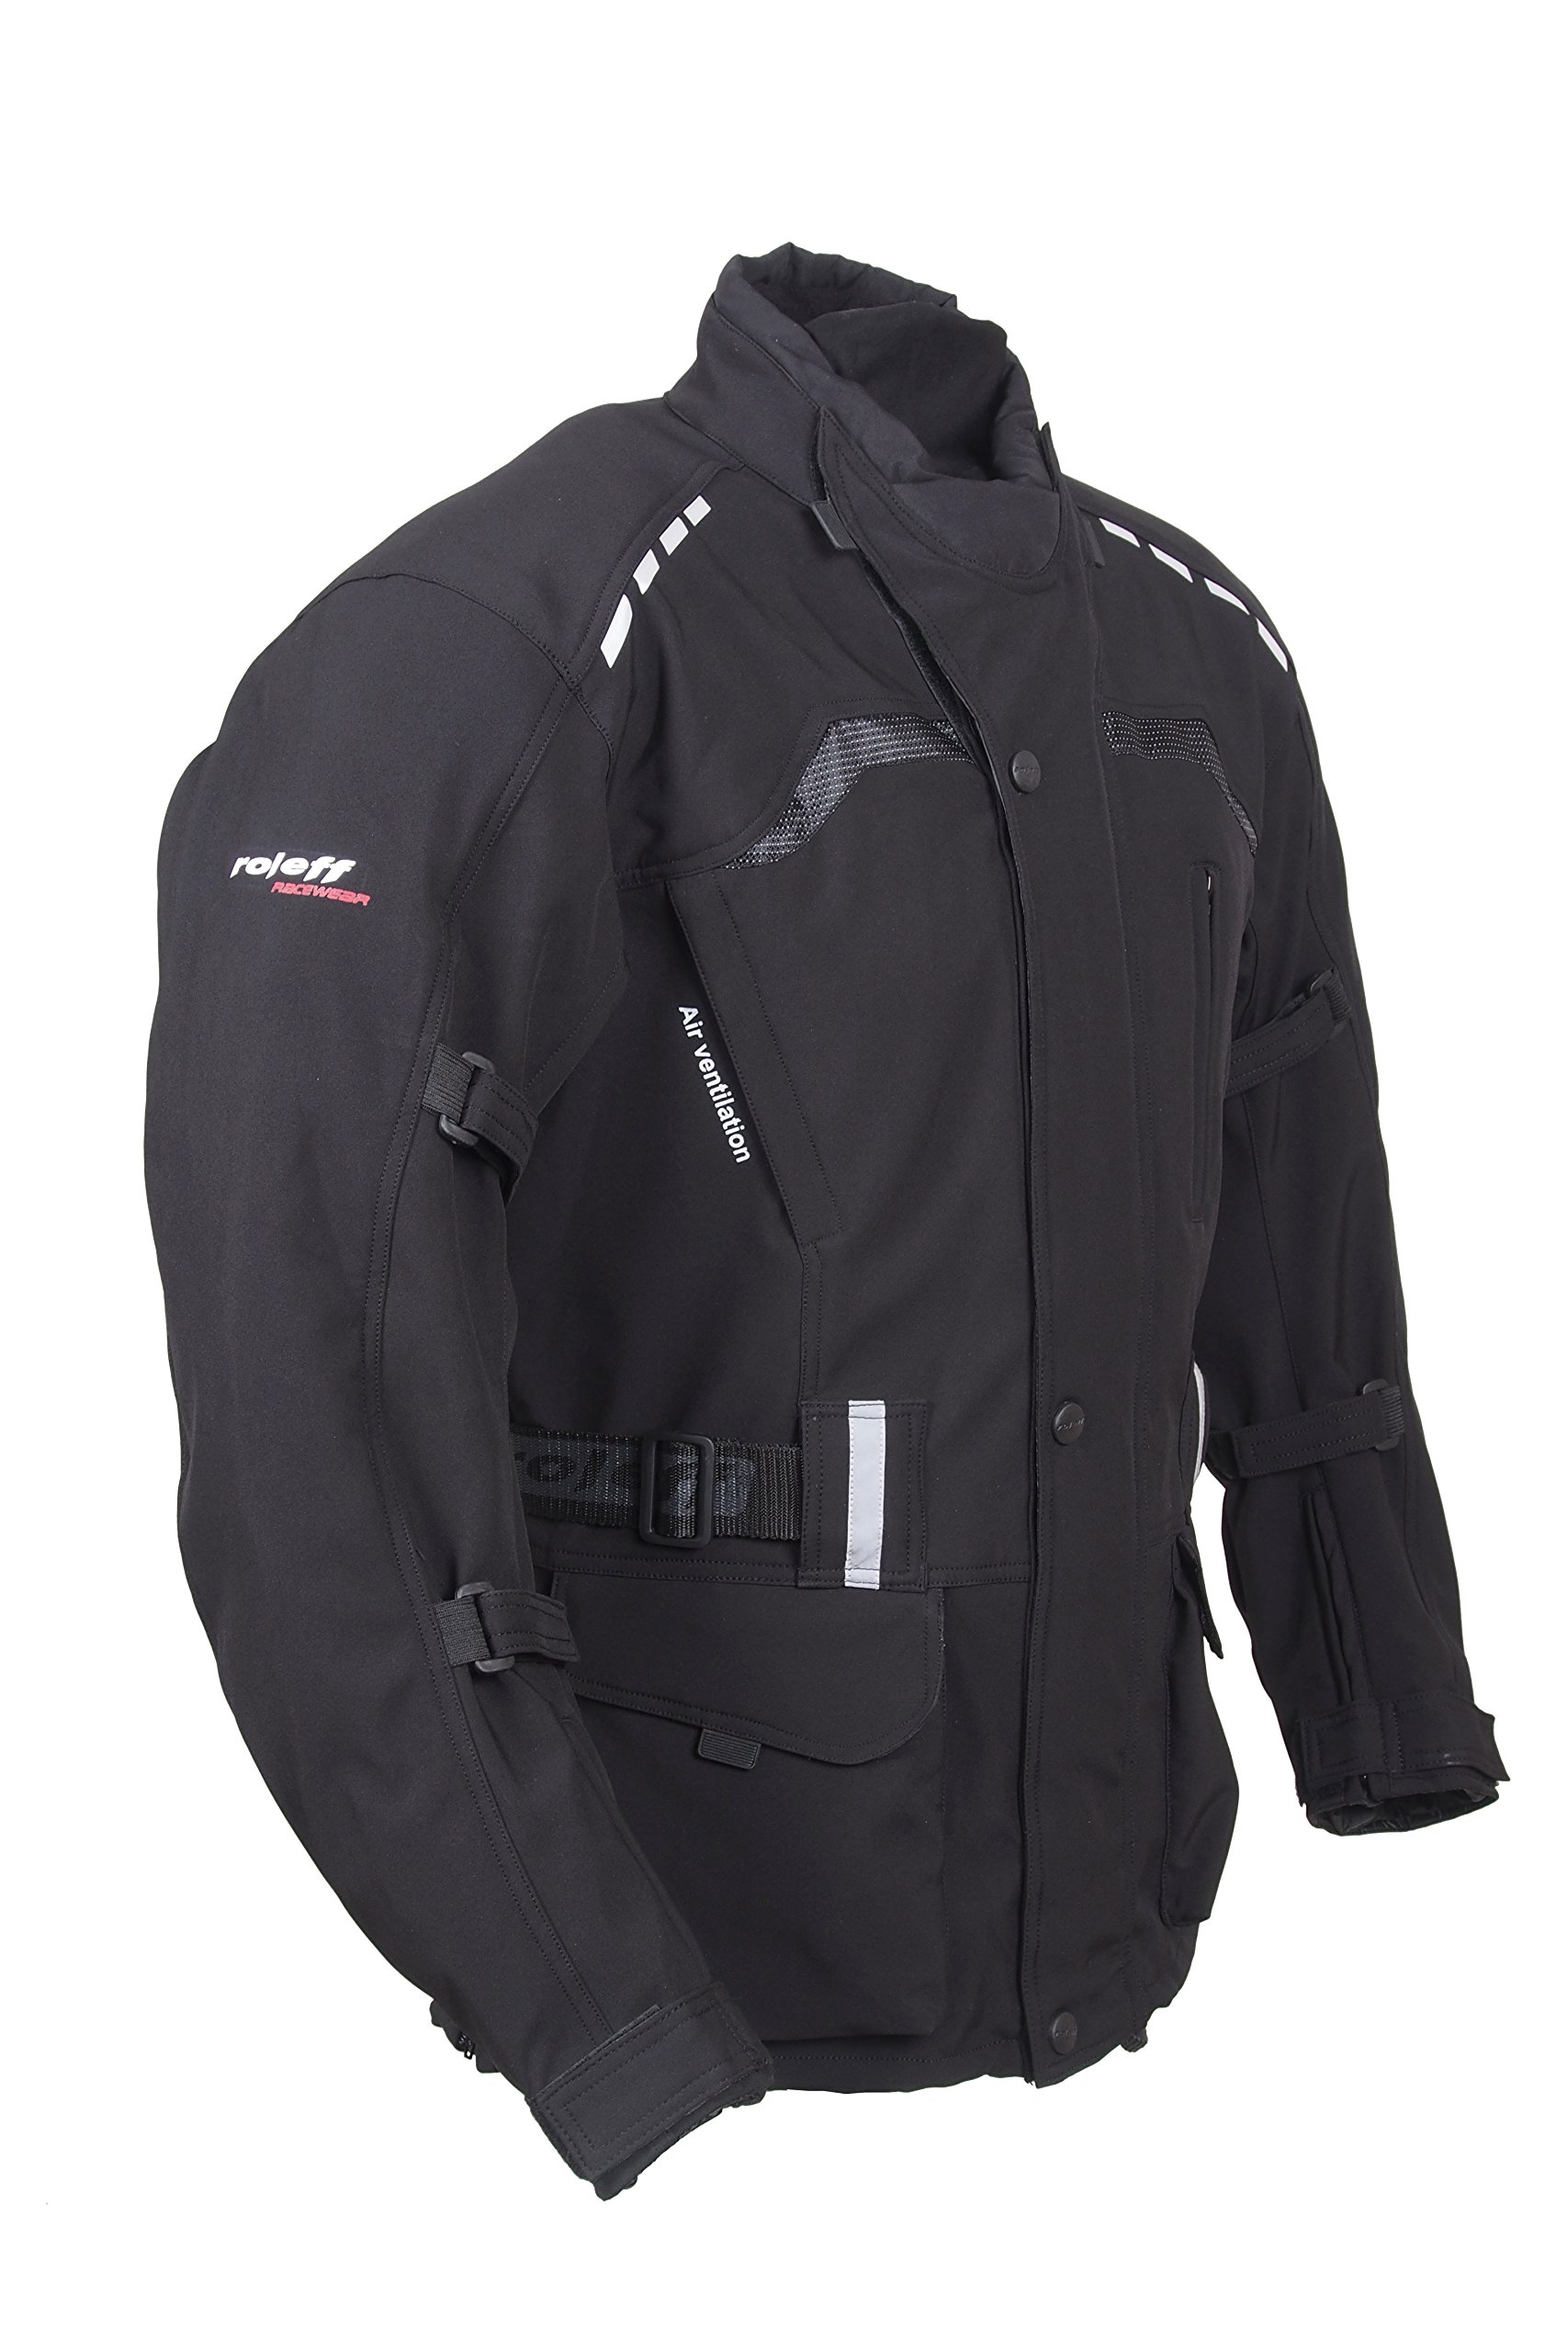 Roleff Racewear Unisex 15125 Lange Softshell Motorradjacke mit Protektoren und Klimamembrane, Schwarz, XL EU